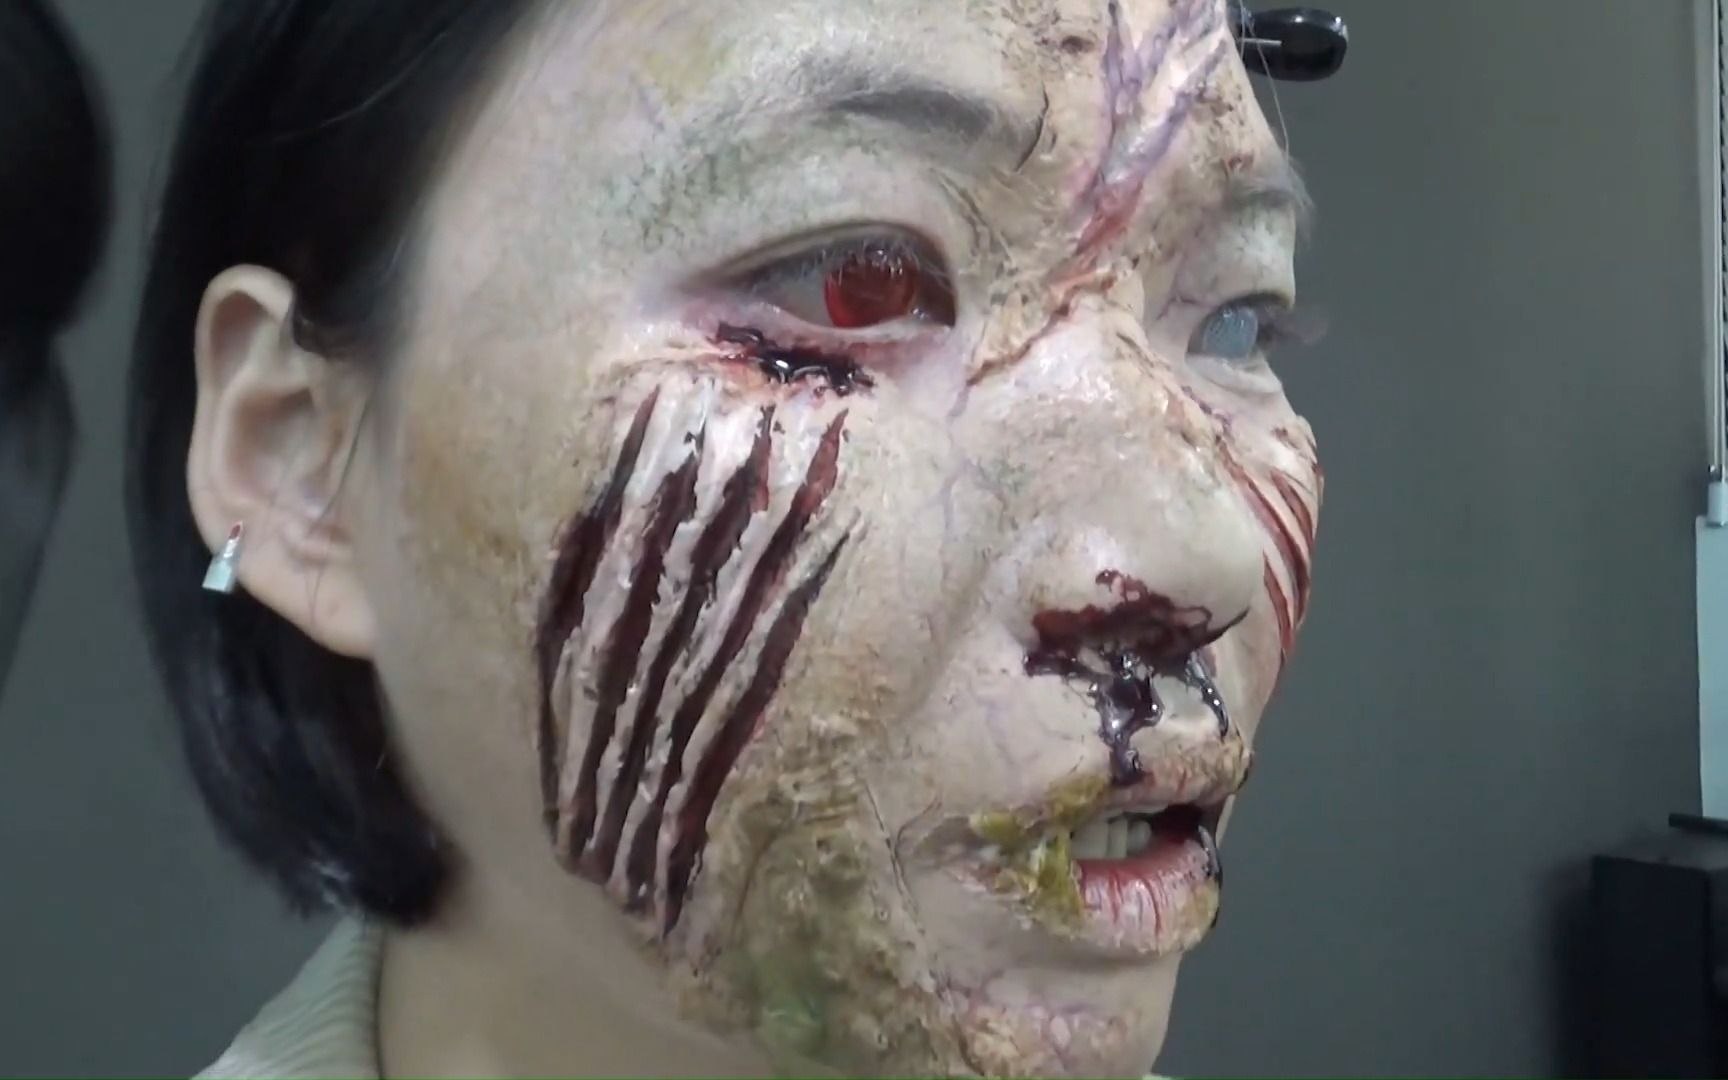 【创意妆】“我们所有人都死了”饥饿的僵尸袭击了一个朋友。 韩国电影特别化妆过程